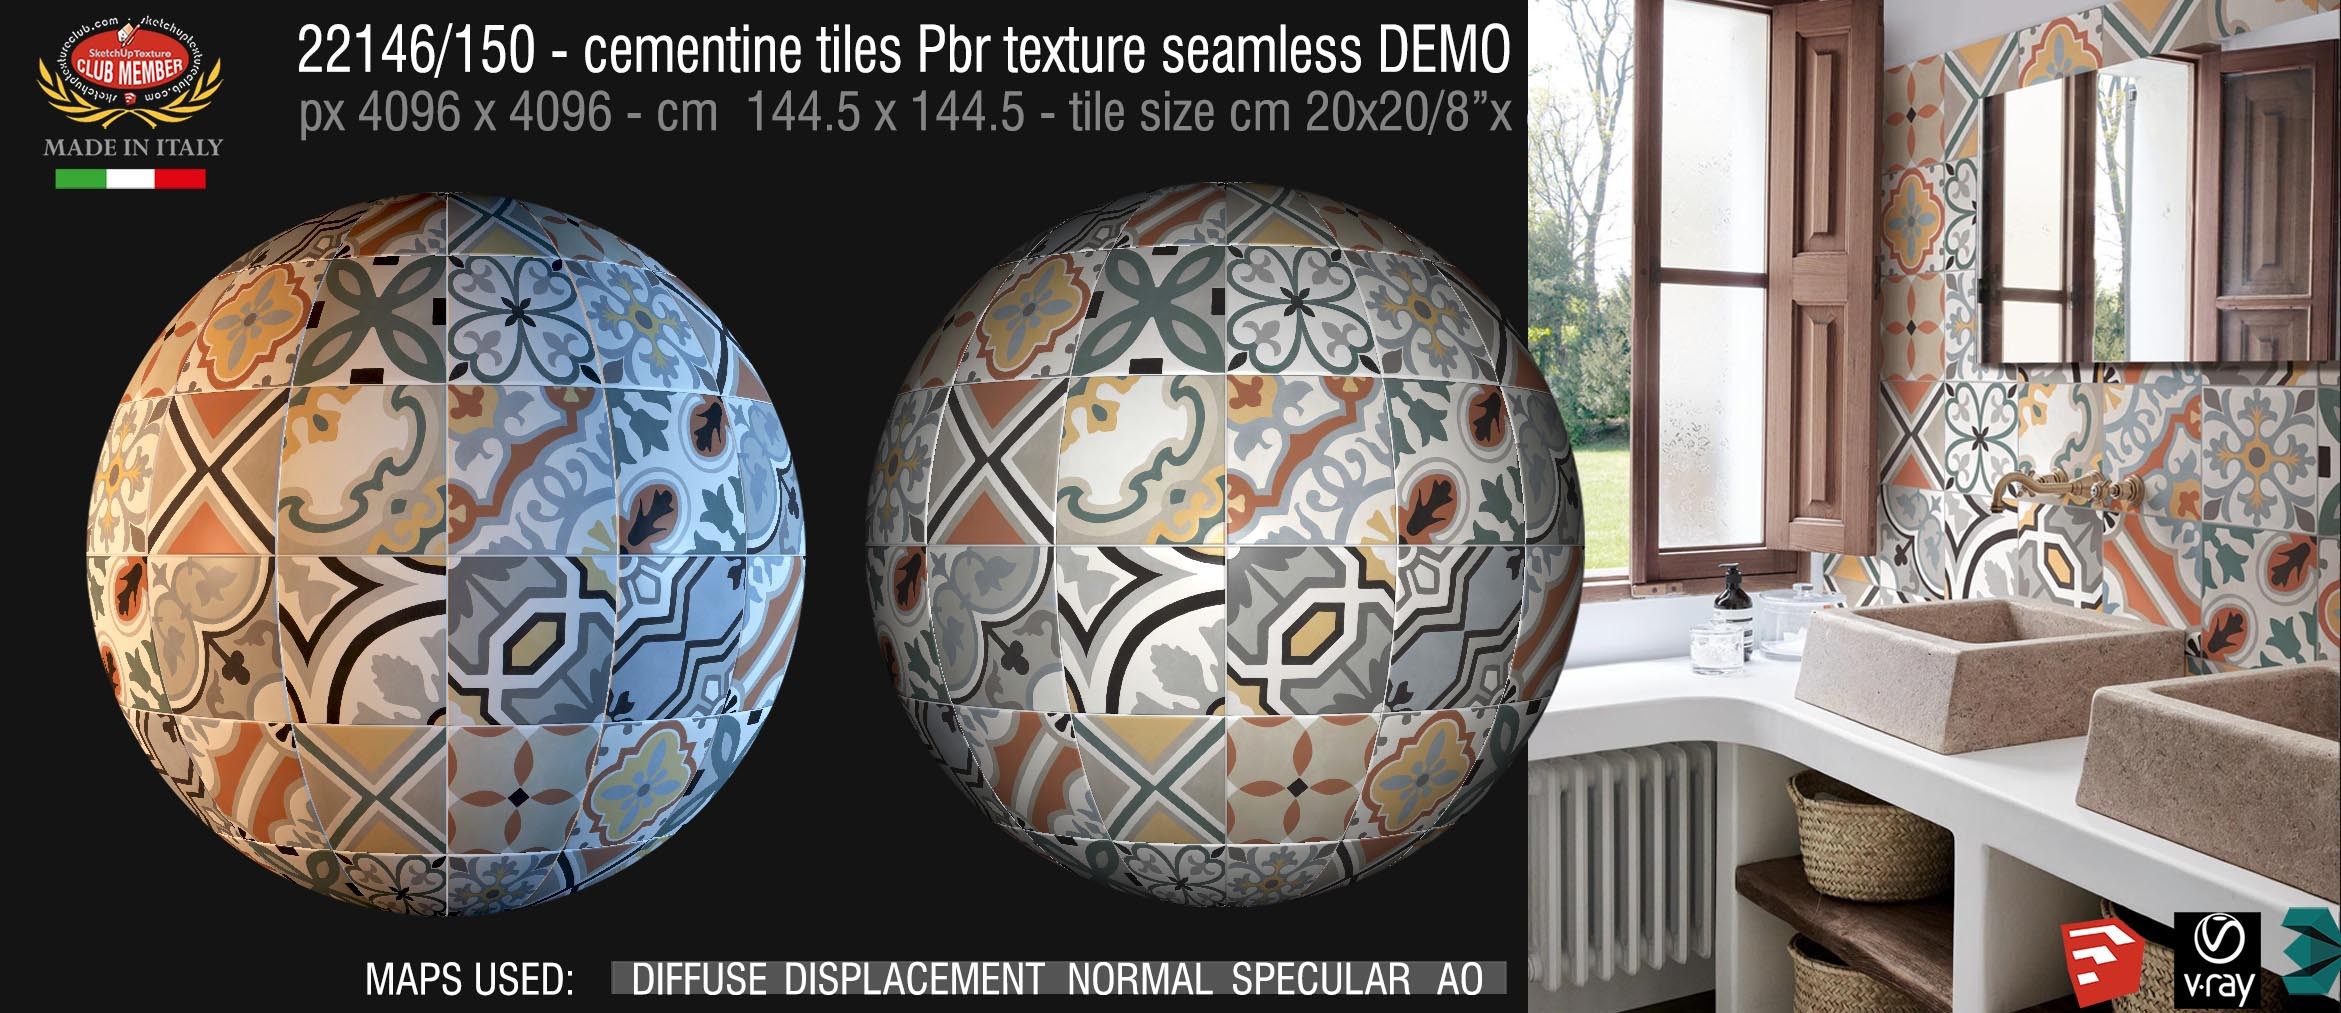 22146/150 cementine tiles Pbr texture seamless DEMO -  D_Segni Colore -  Concrete Look by Marazzi